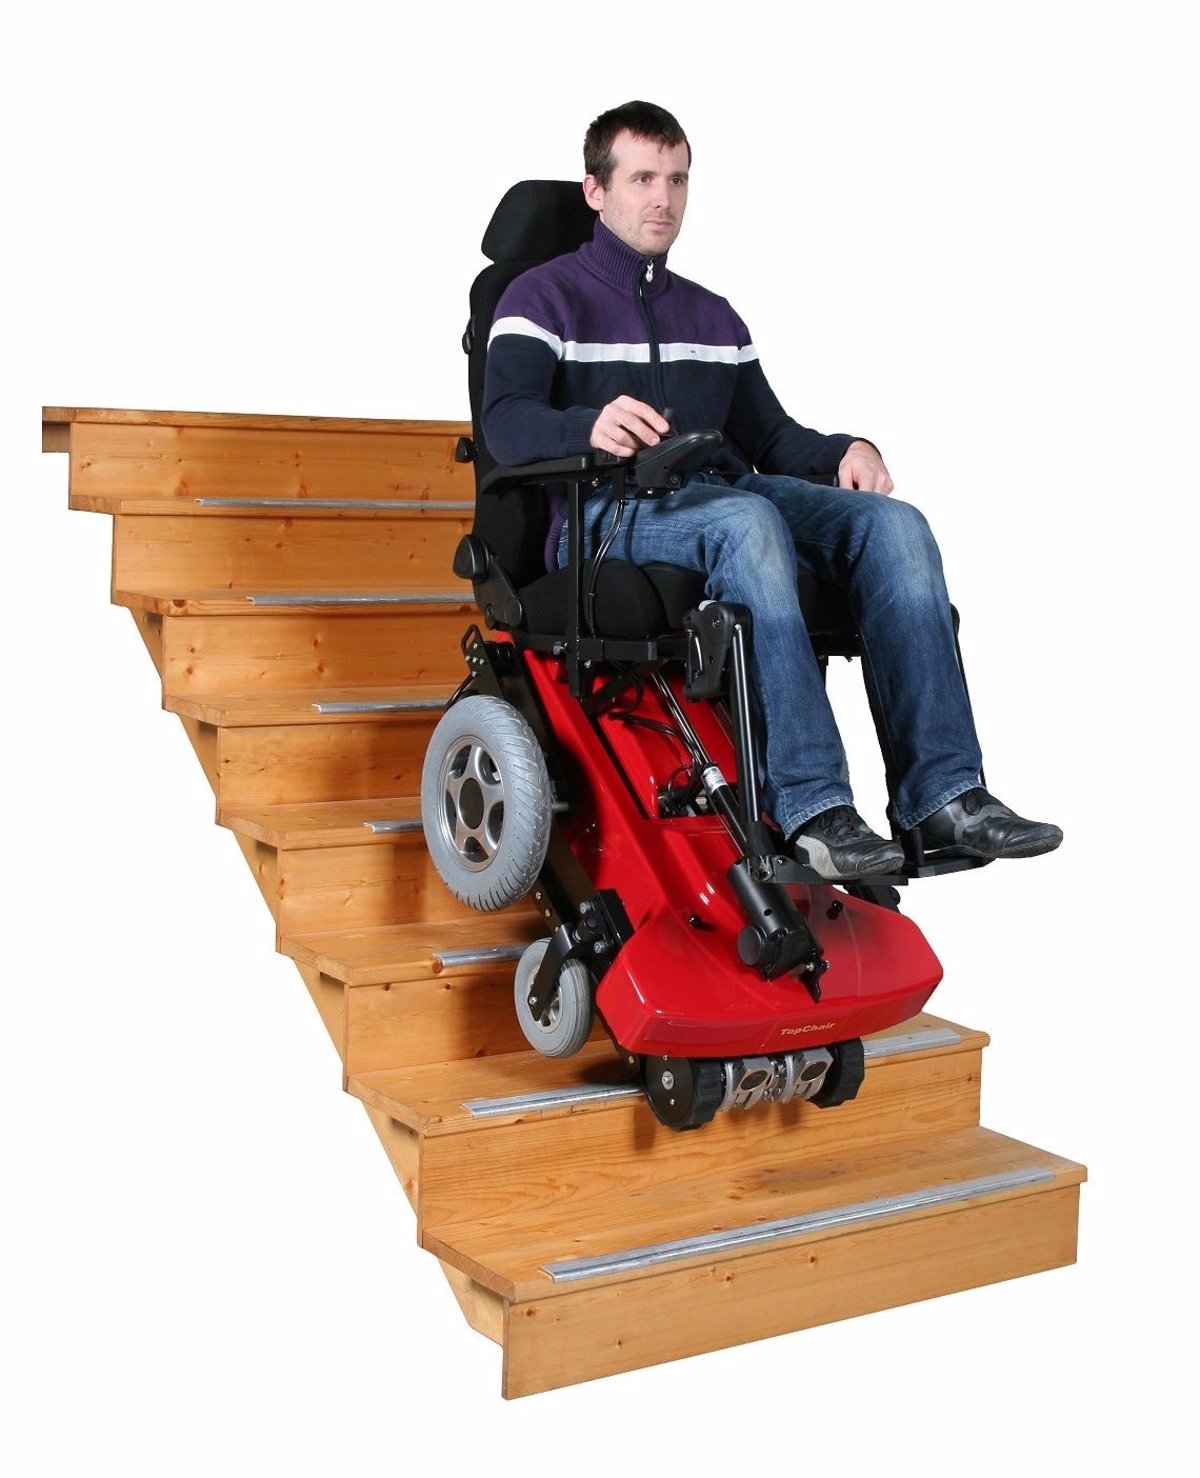 Шагающее кресло. Инвалидная коляска ступенькоход. Подъемник ступенькоход. Кресло-коляска для инвалидов для подъема по лестнице. Коляска инвалидная для подъема подъема по лестнице.